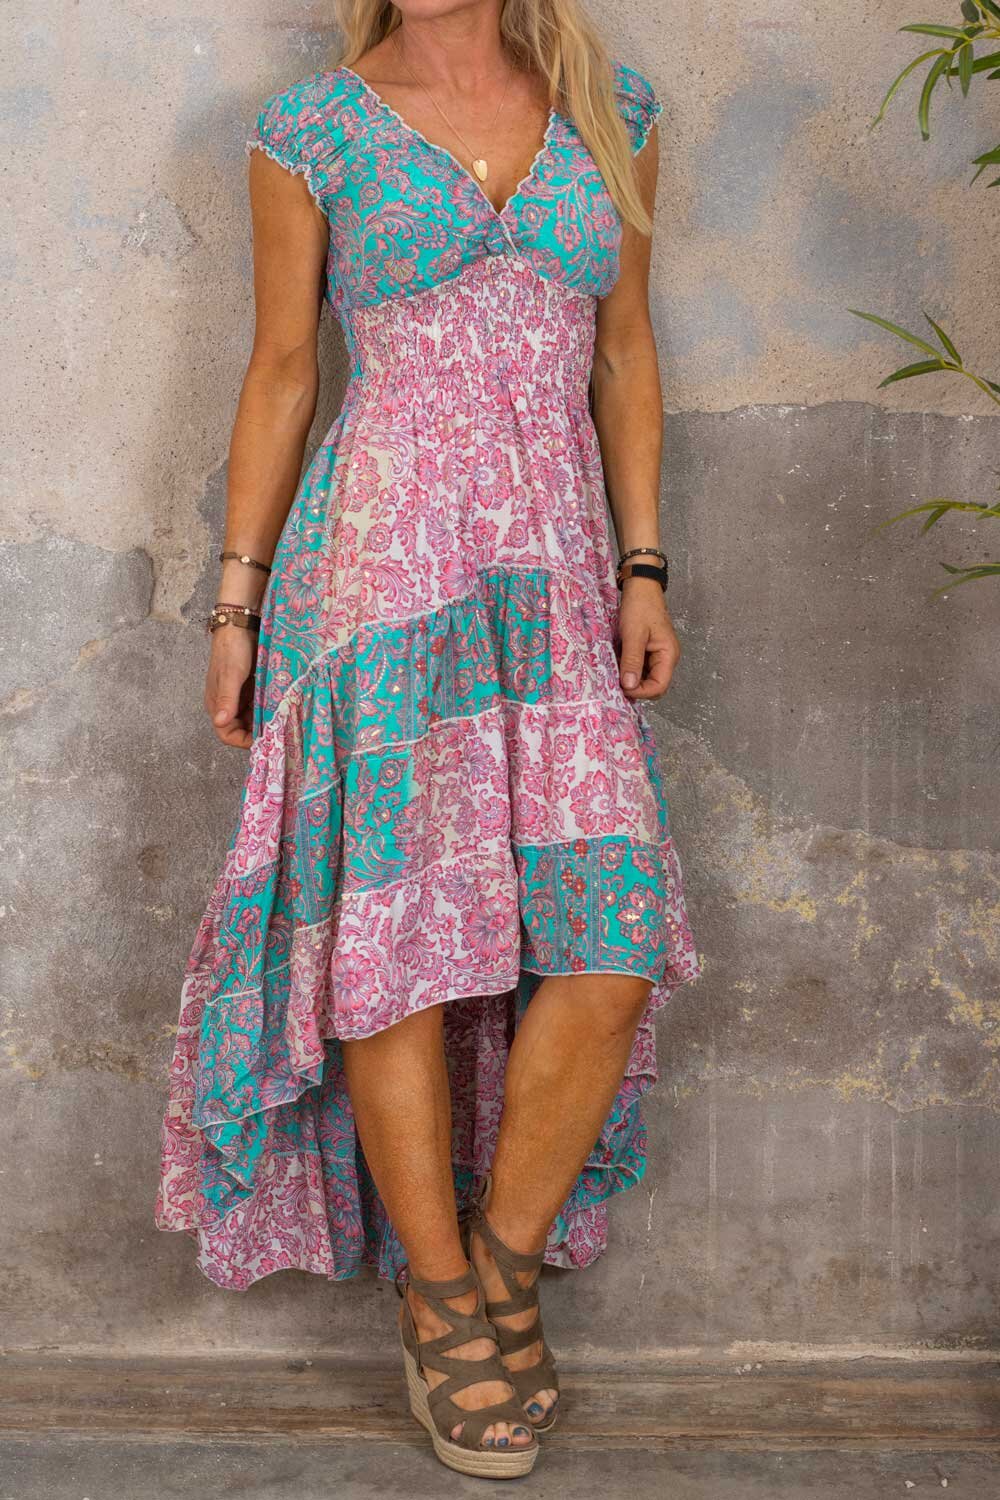 Estella dress - Floral pattern - Teal/Pink